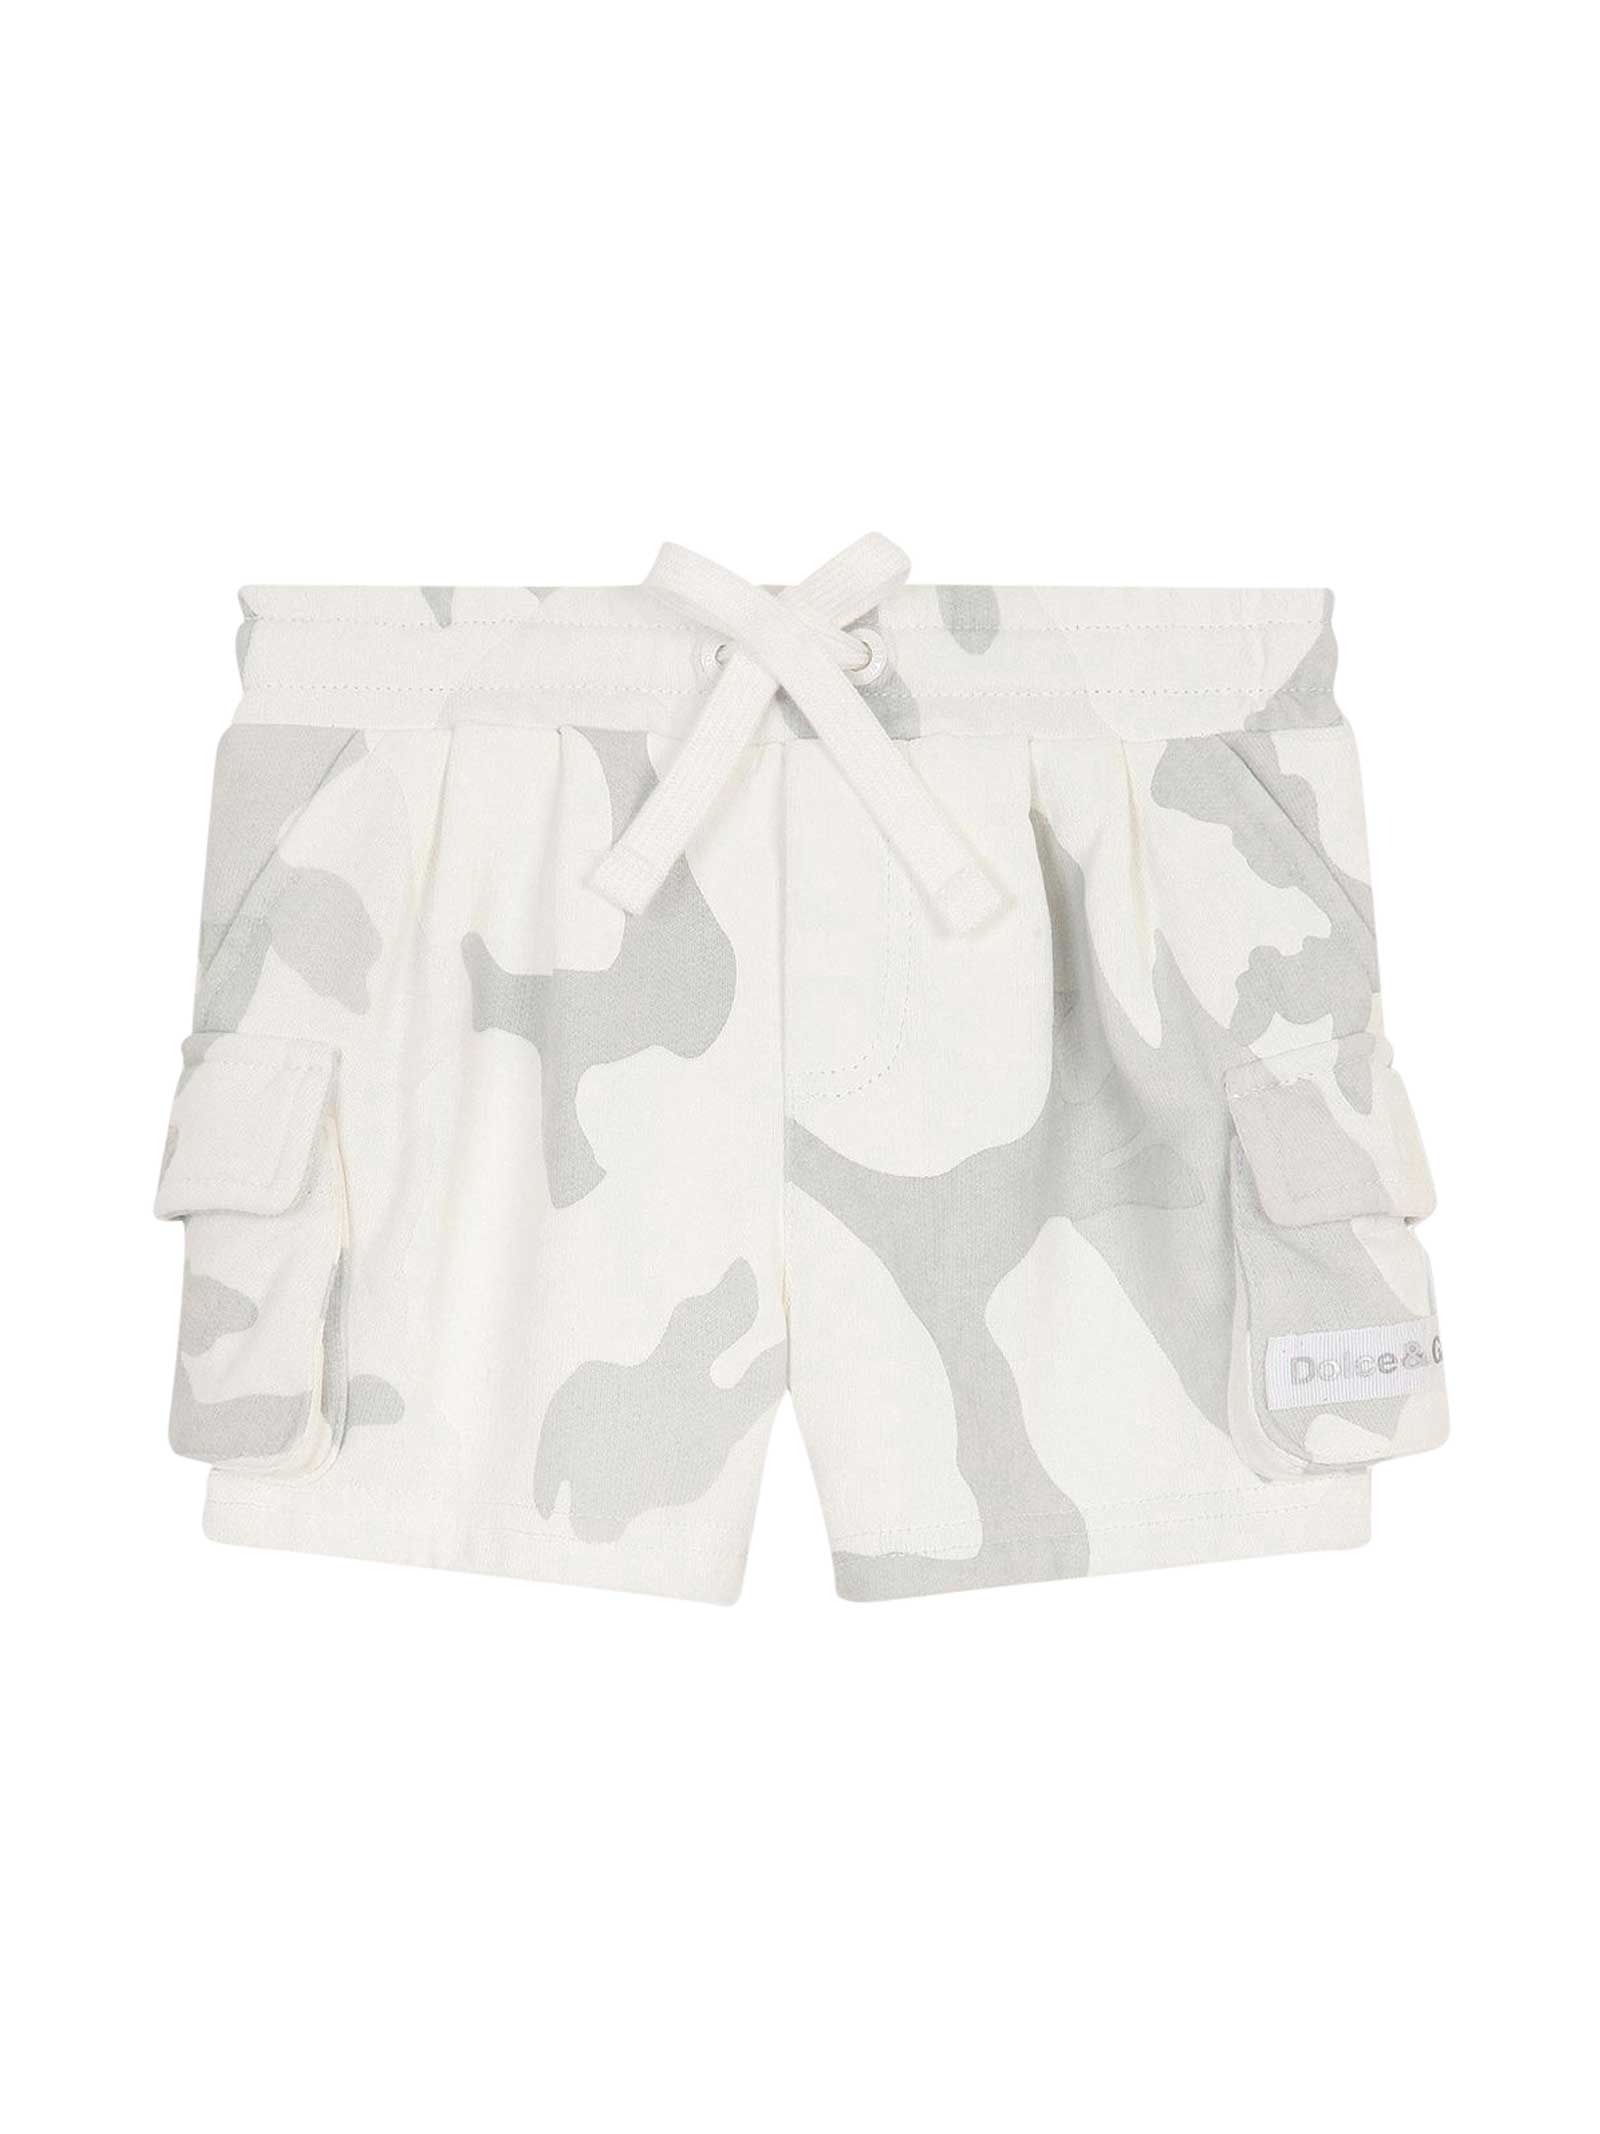 Dolce & Gabbana Camouflage Shorts